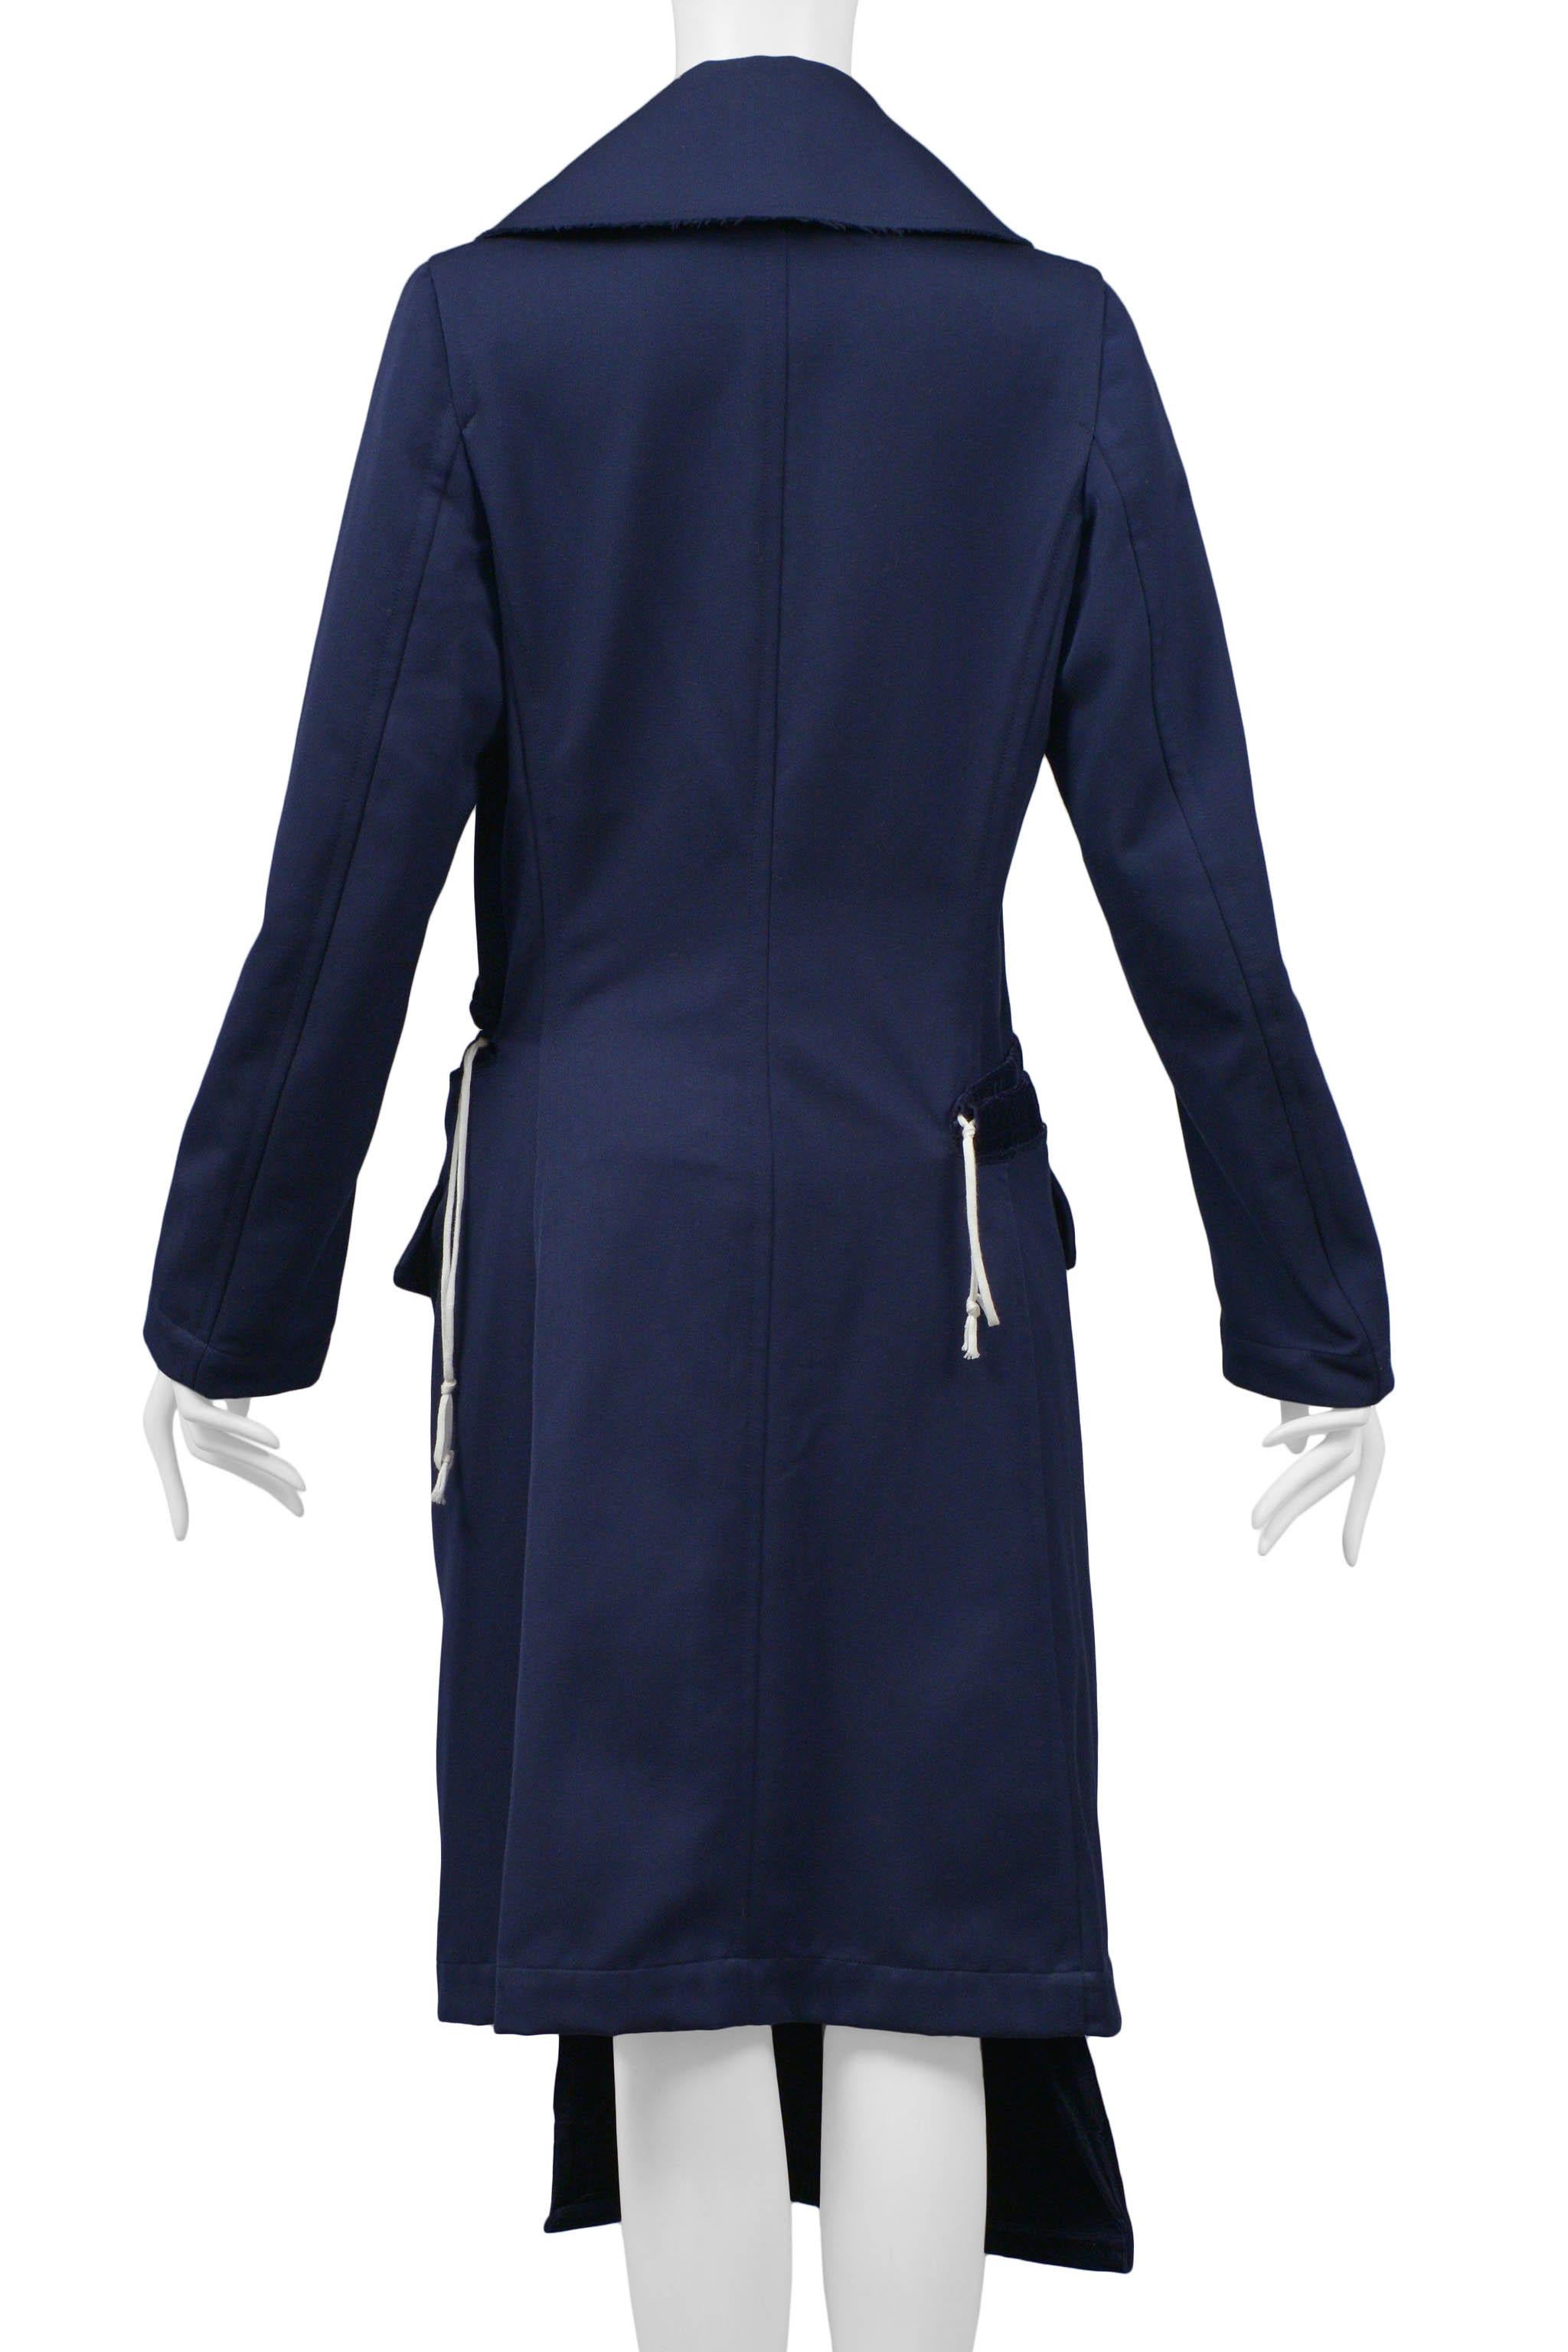 Comme Des Garcons Blue Deconstructed Coat 2008 For Sale 1